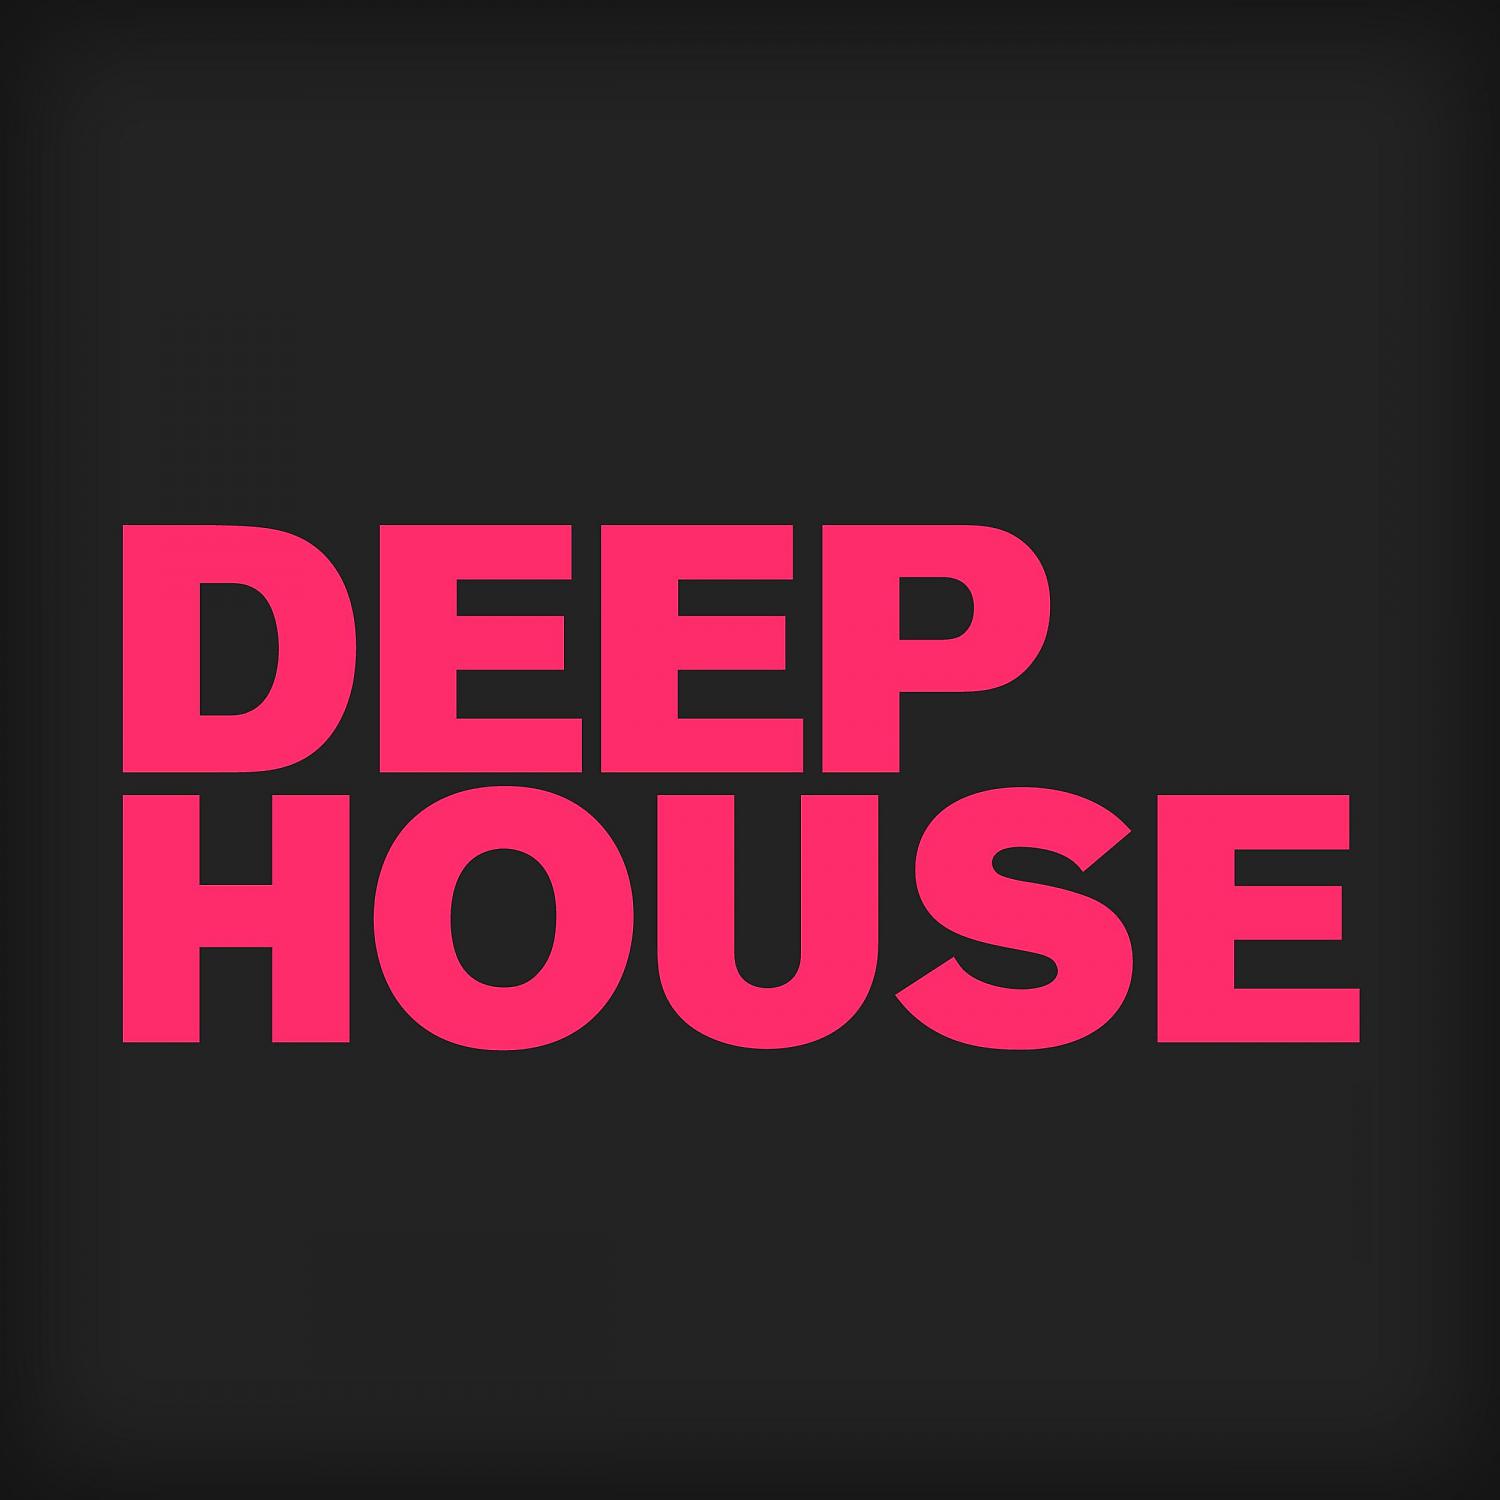 Дип Хаус. Логотип Deep House. Обложка дип Хаус. Надпись Deep. Клубный дип